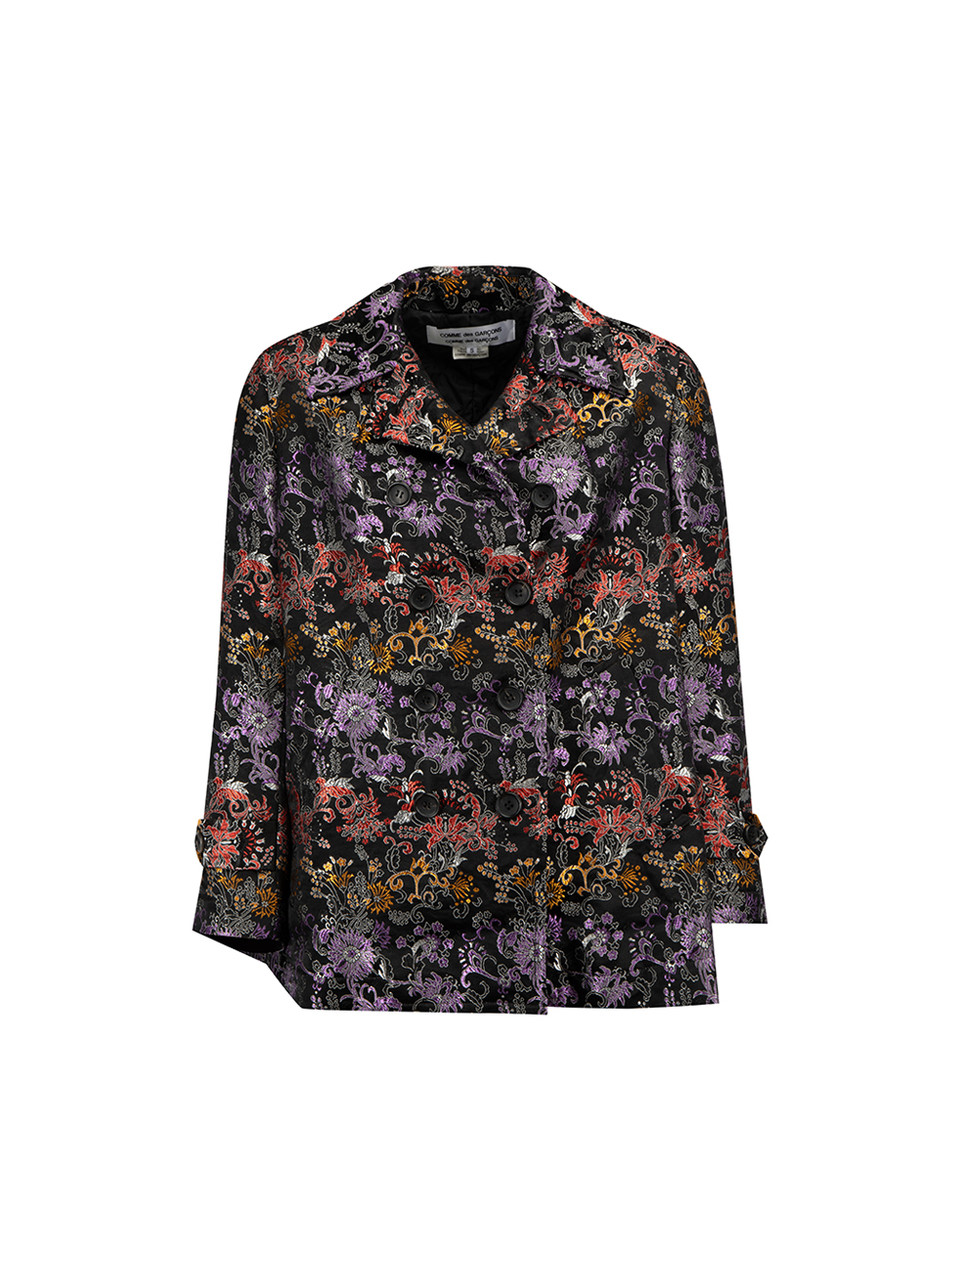 COMME des GARCONS floral shirt jacket